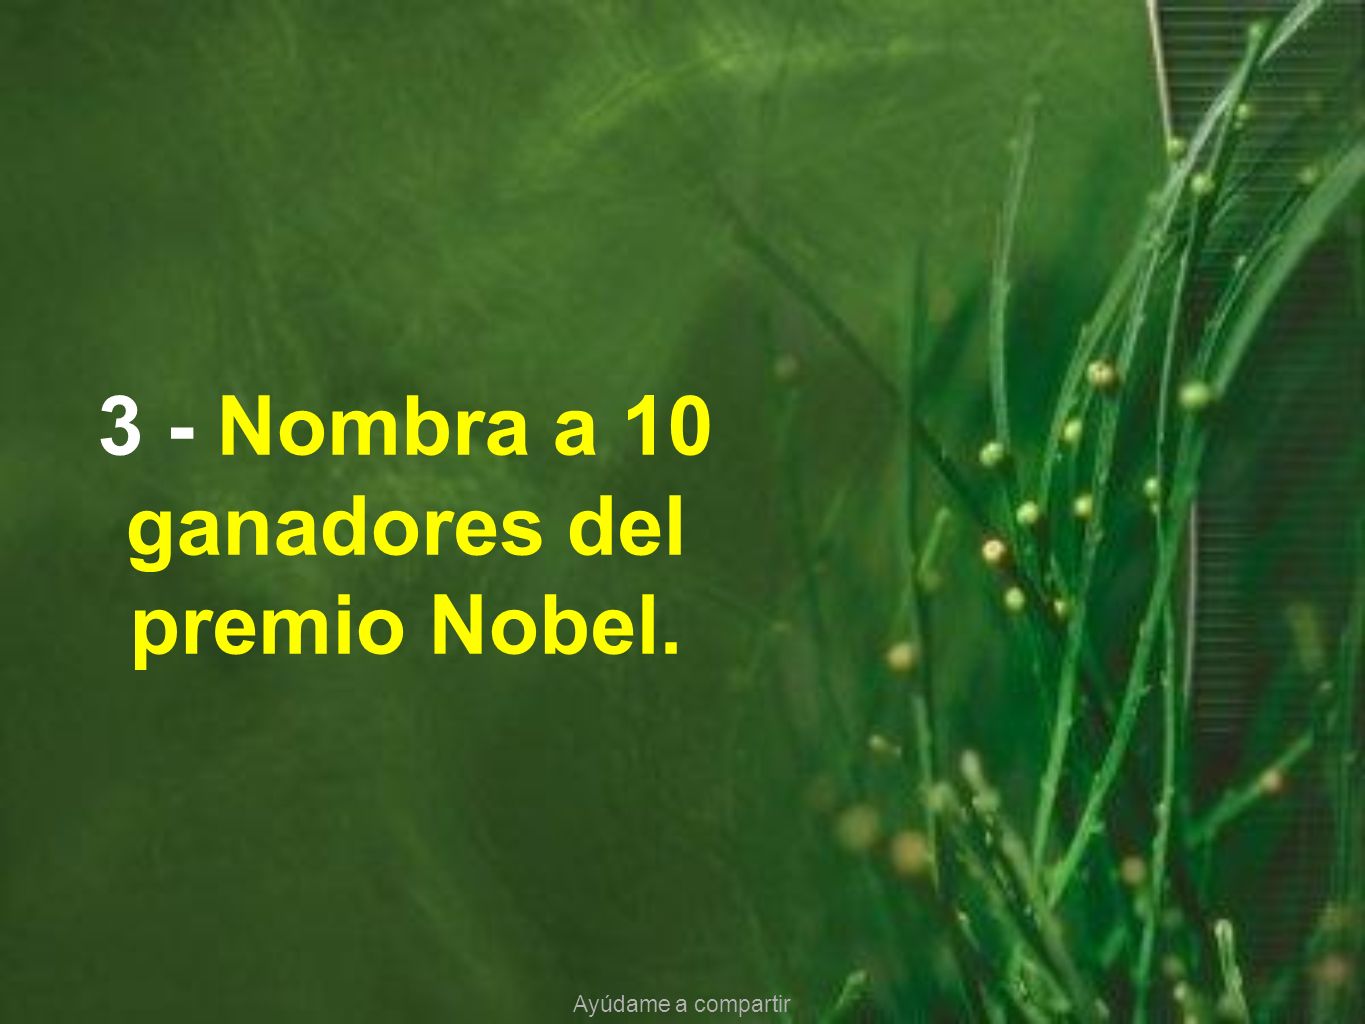 3 - Nombra a 10 ganadores del premio Nobel.